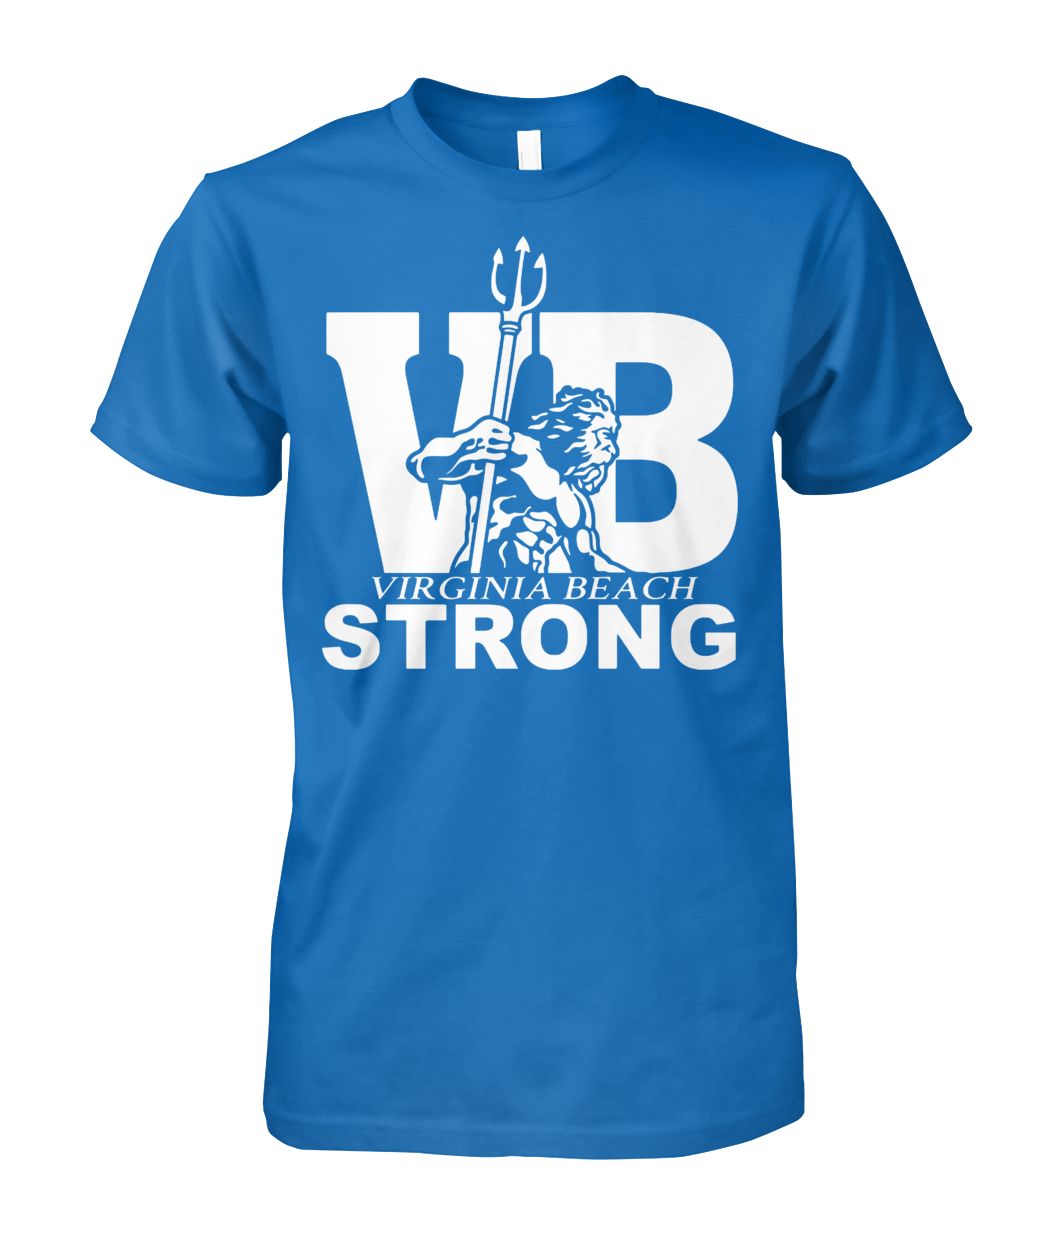 VB strong virginia beach strong #vbstrong unisex cotton tee